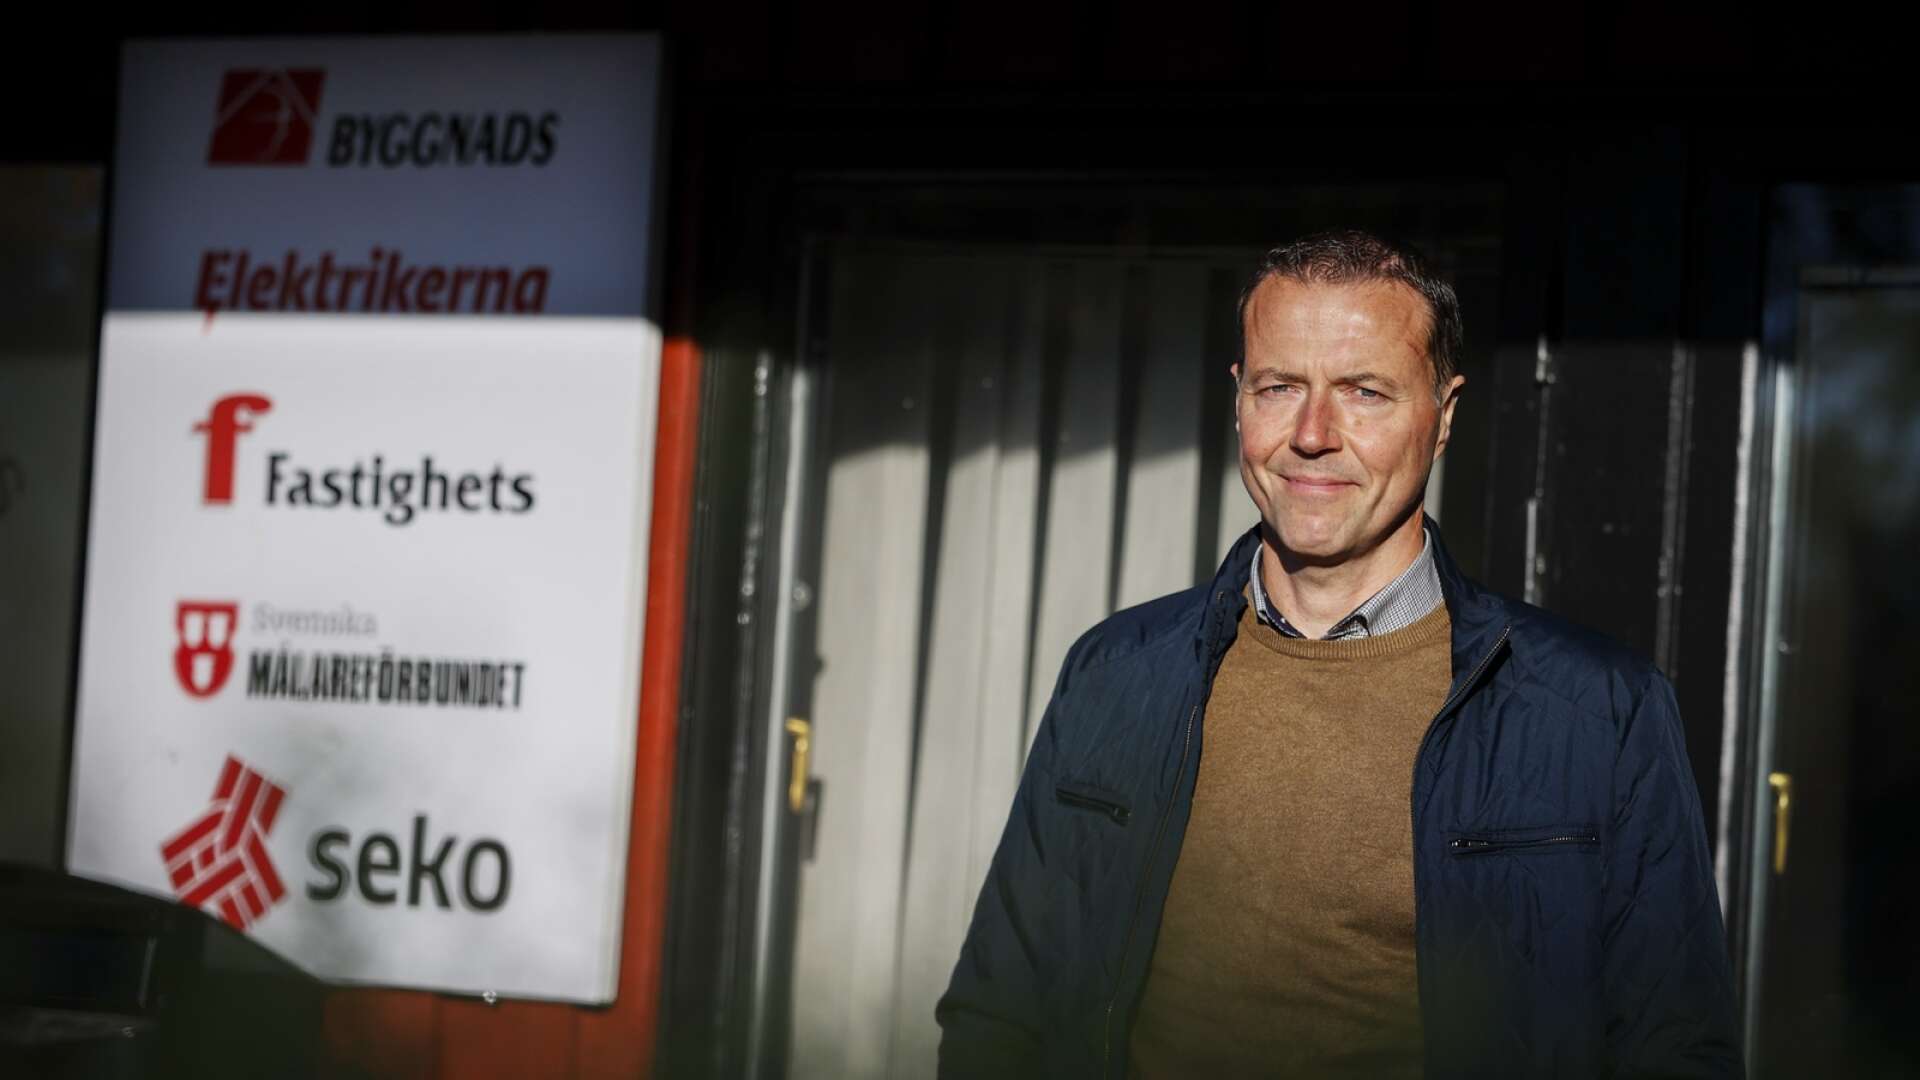 Peter Söderström (S) nomineras av Byggnads som S-kandidat till Värmlandsbänken.